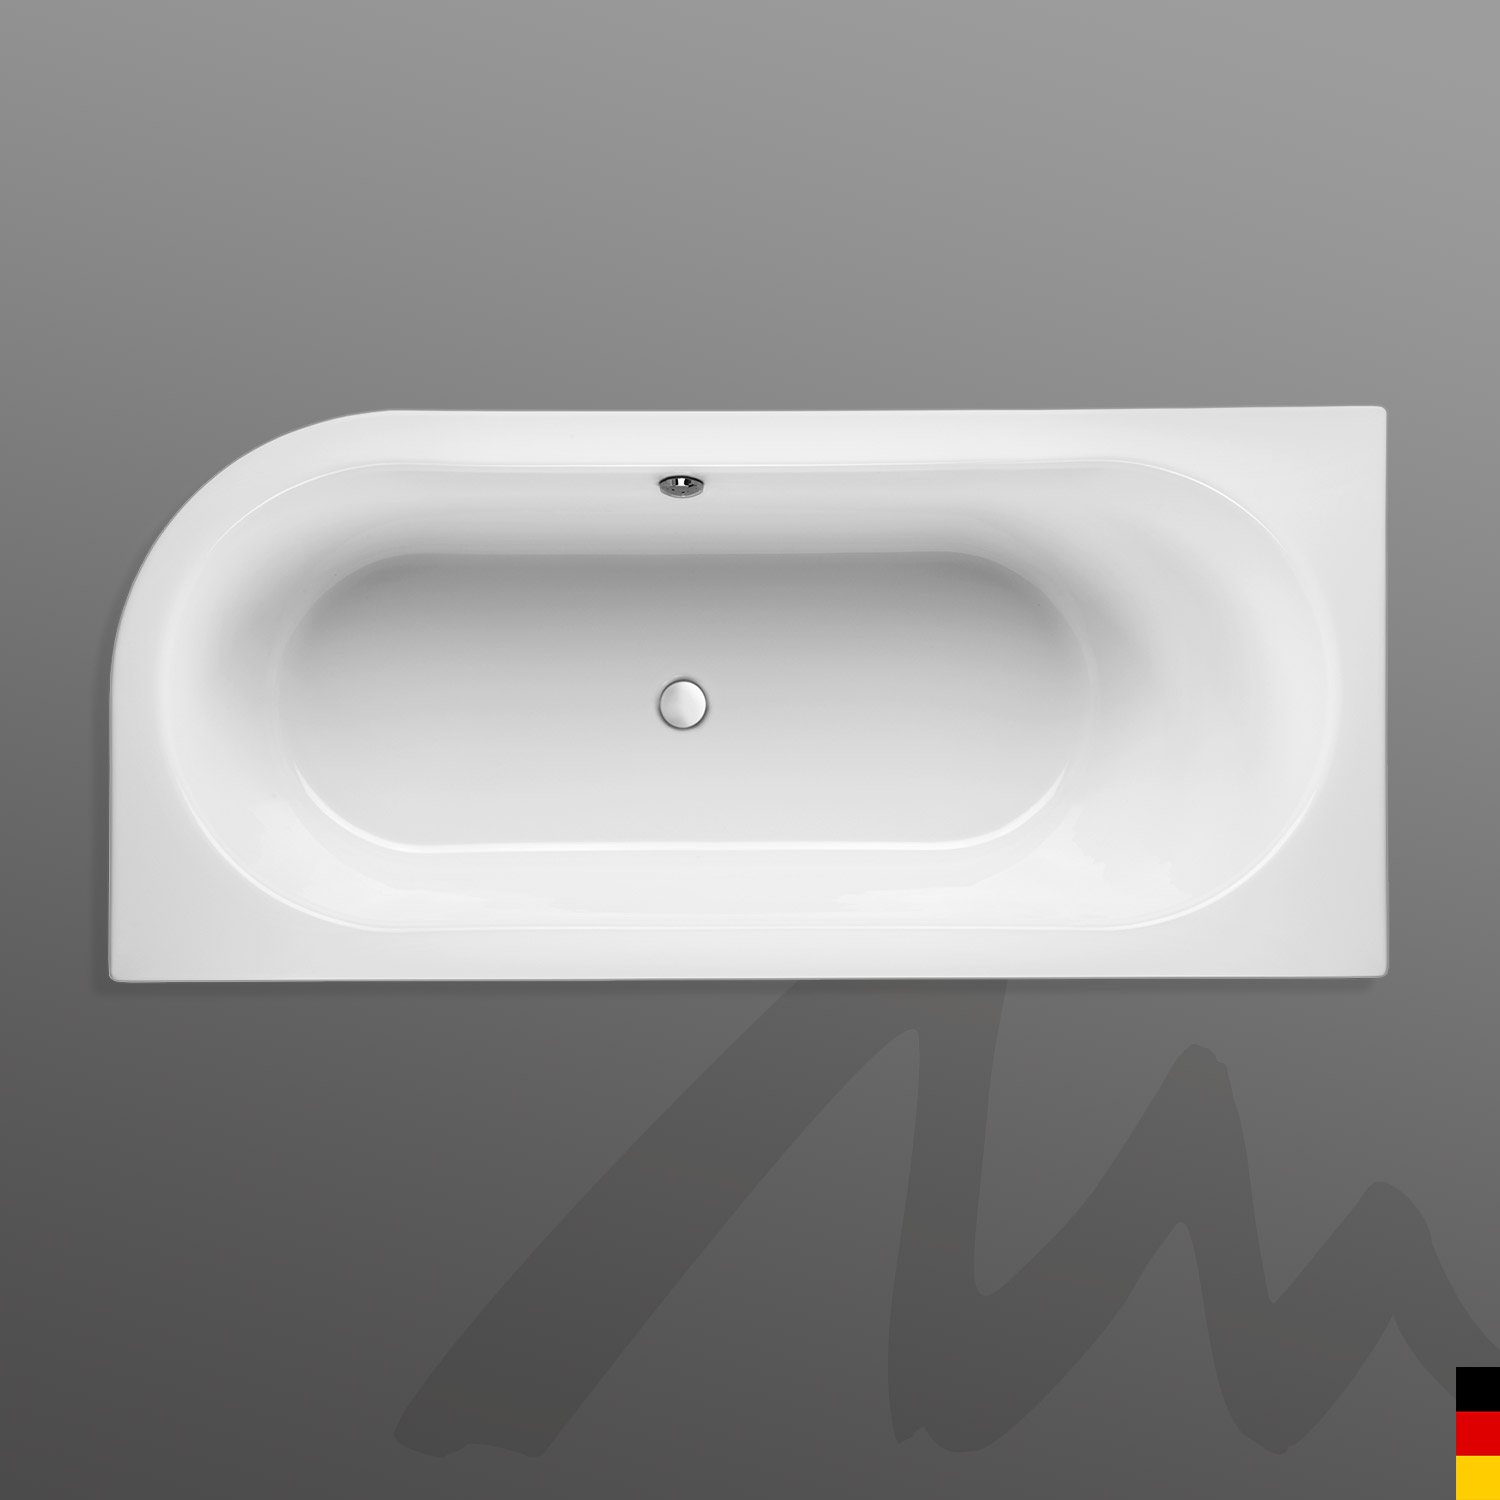 Mauersberger Badewanne Oval Primo 1 - 170/75 uno Ausführung rechts  170x75x44  Farbe:weiß